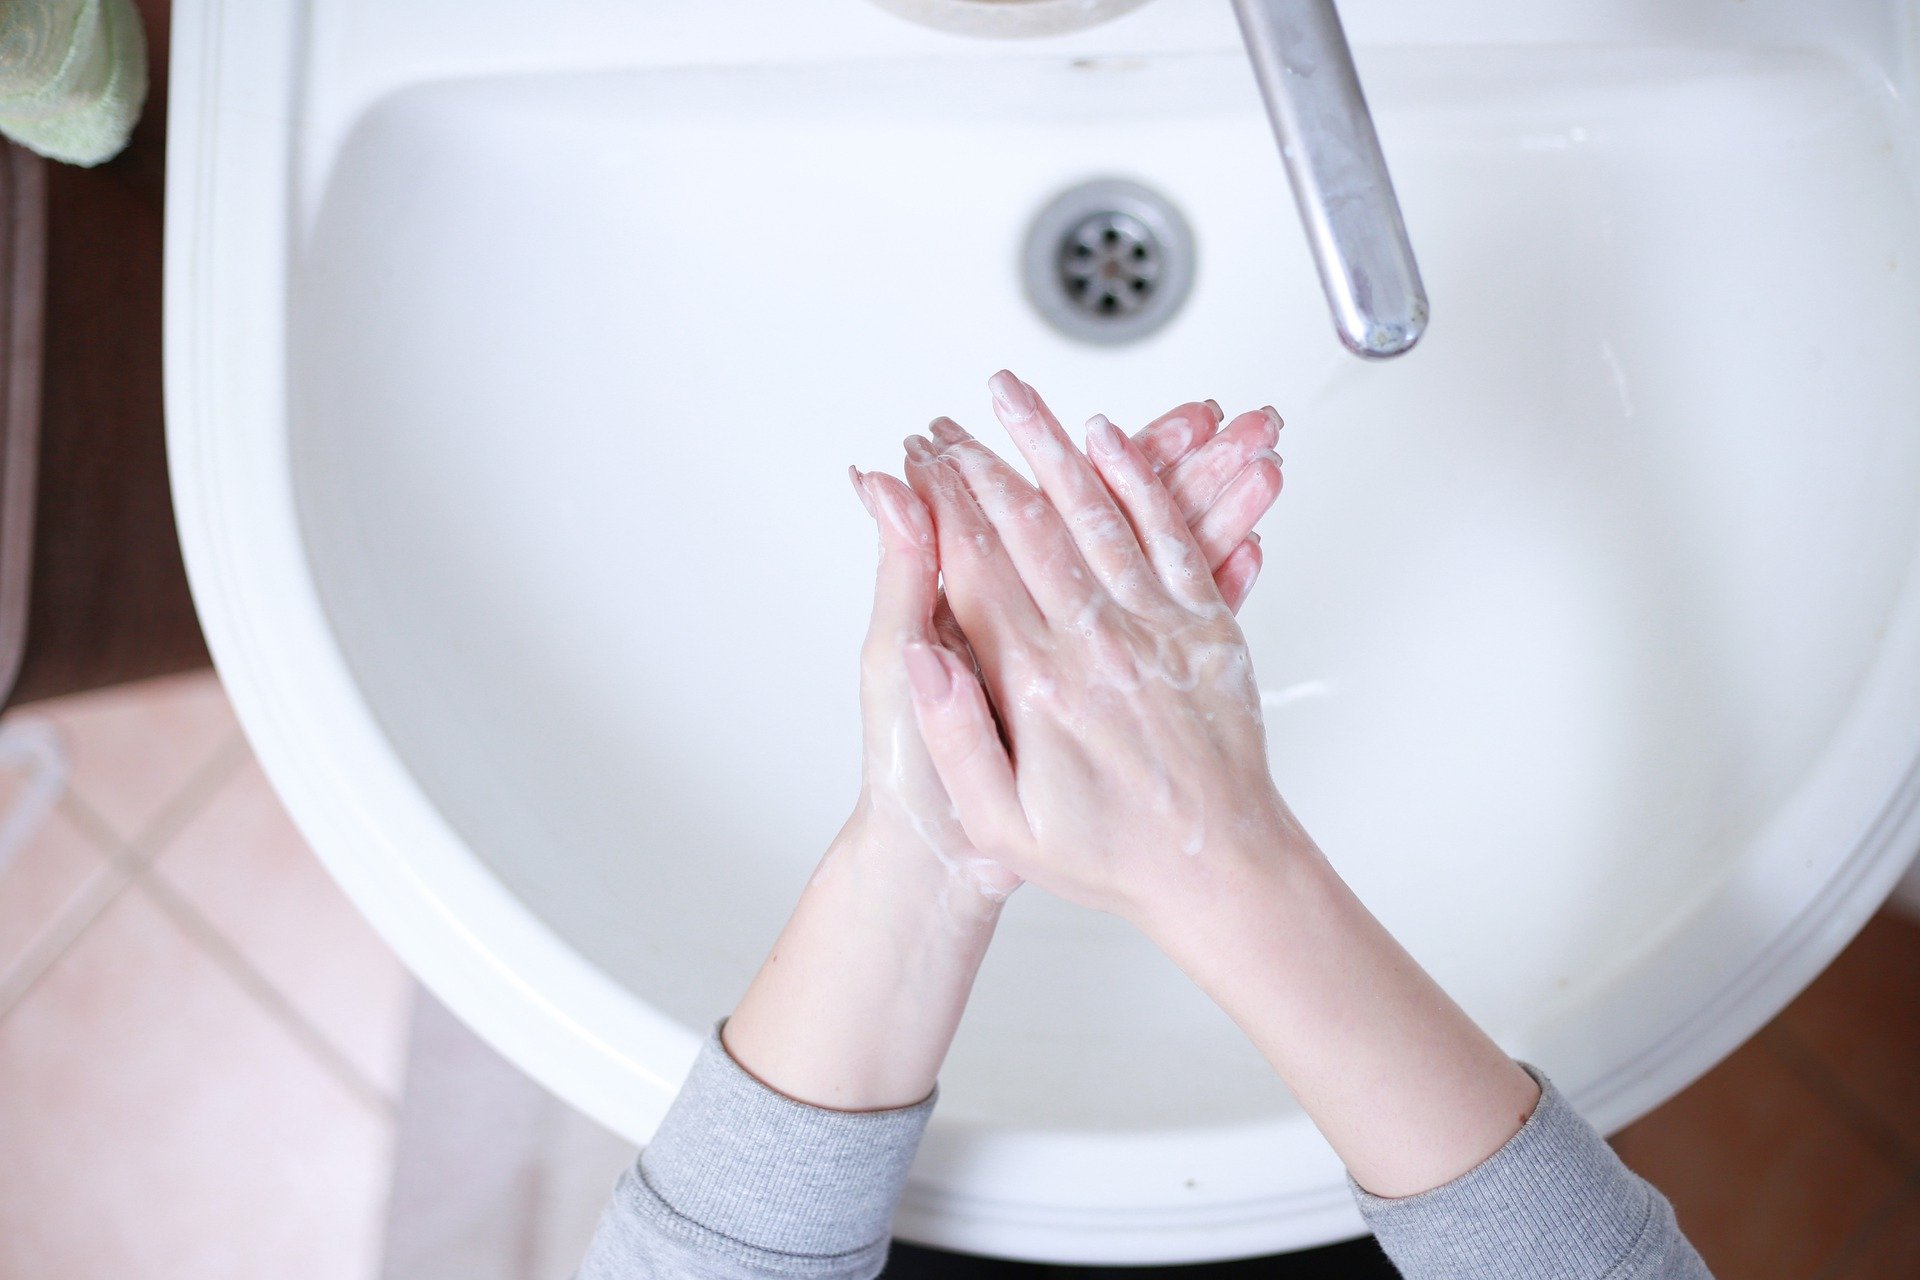 Comment réparer des mains sèches, abîmées?